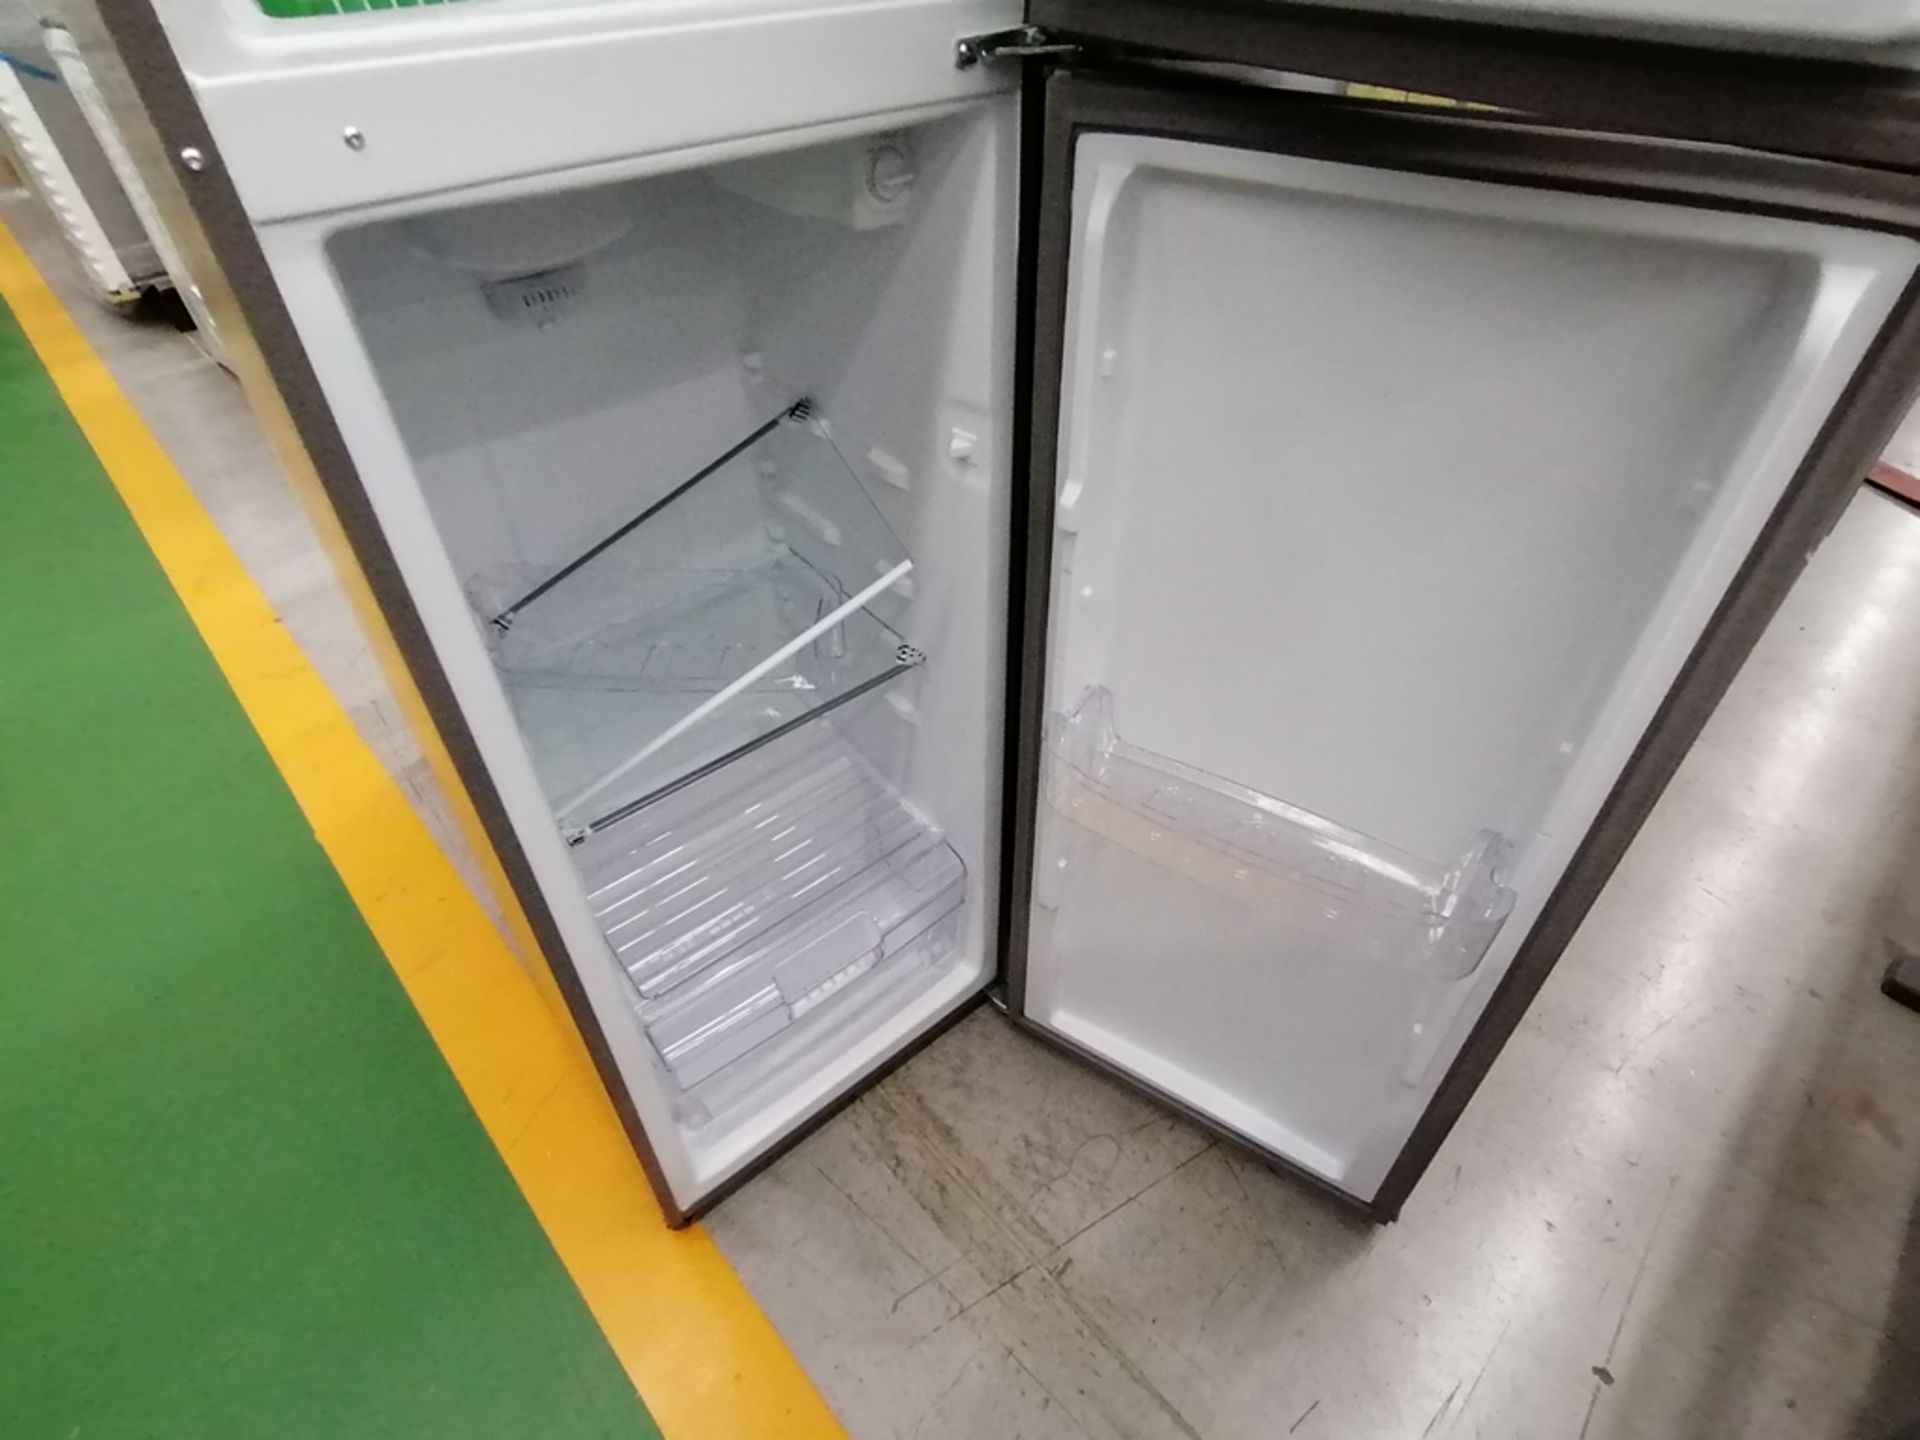 Lote de 2 refrigeradores incluye: 1 Refrigerador, Marca Acros, Modelo AT9007G, Serie VRA4332547, Co - Image 5 of 14